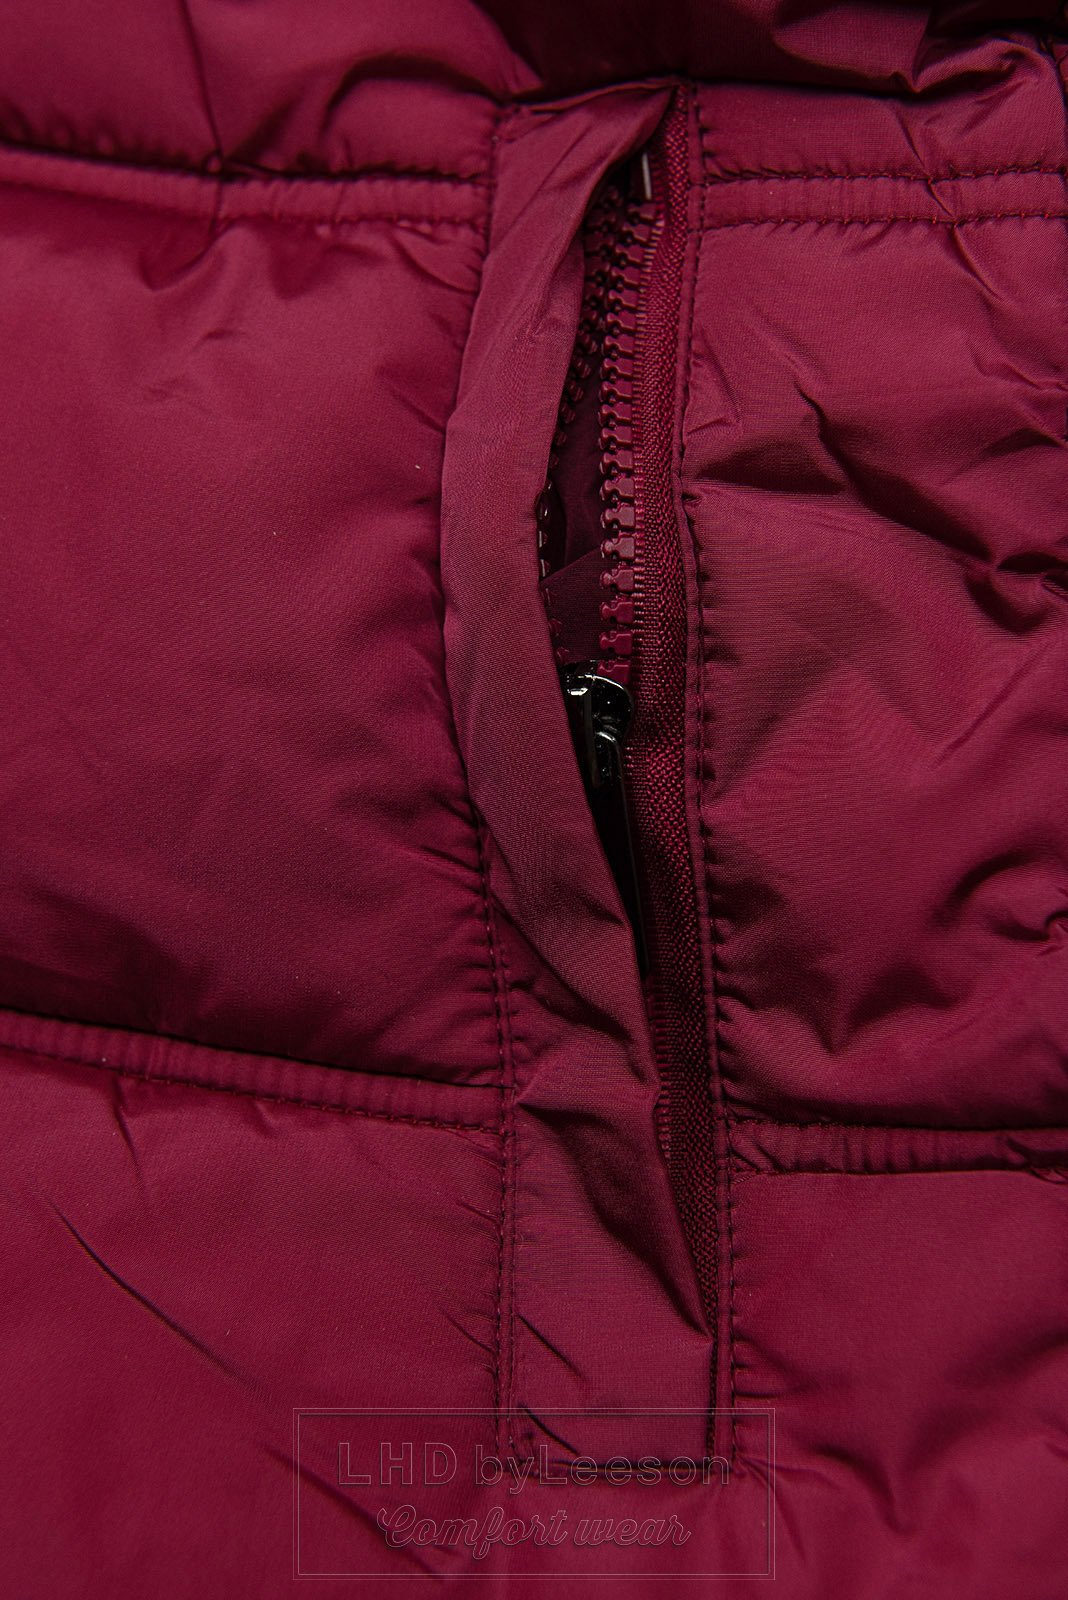 Burgundowa kurtka zimowa w pikowanym designe